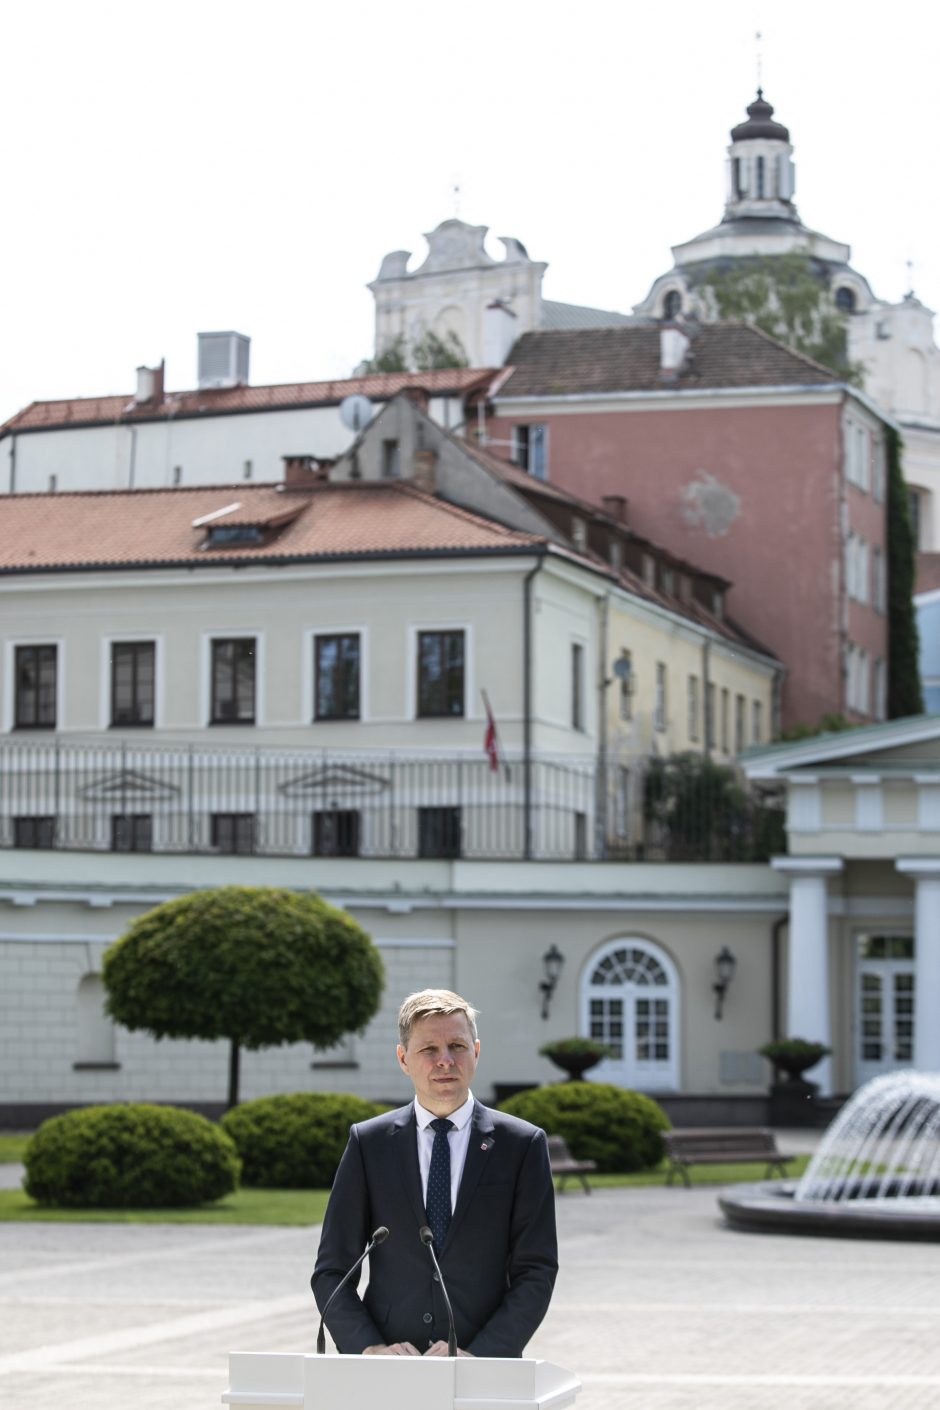 G. Nausėda ir R. Šimašius pristatė iniciatyvą „Vilnius atviras kultūrai“